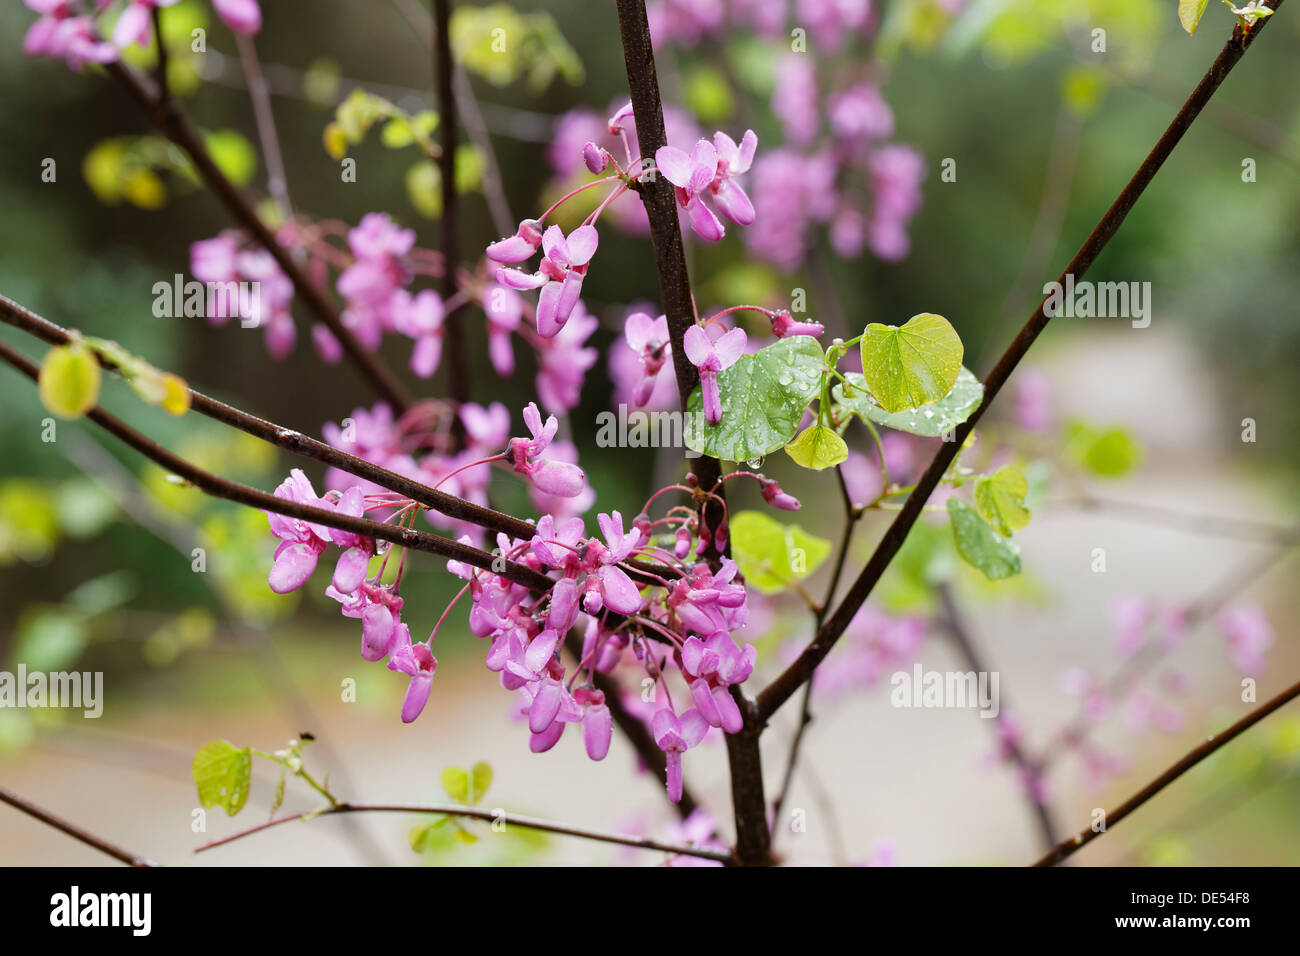 La floraison (arbre de Judée, Cercis siliquastrum), Parc National de Dilek, Kusadasi, Aydin province, région de l'Egée, la Turquie Banque D'Images